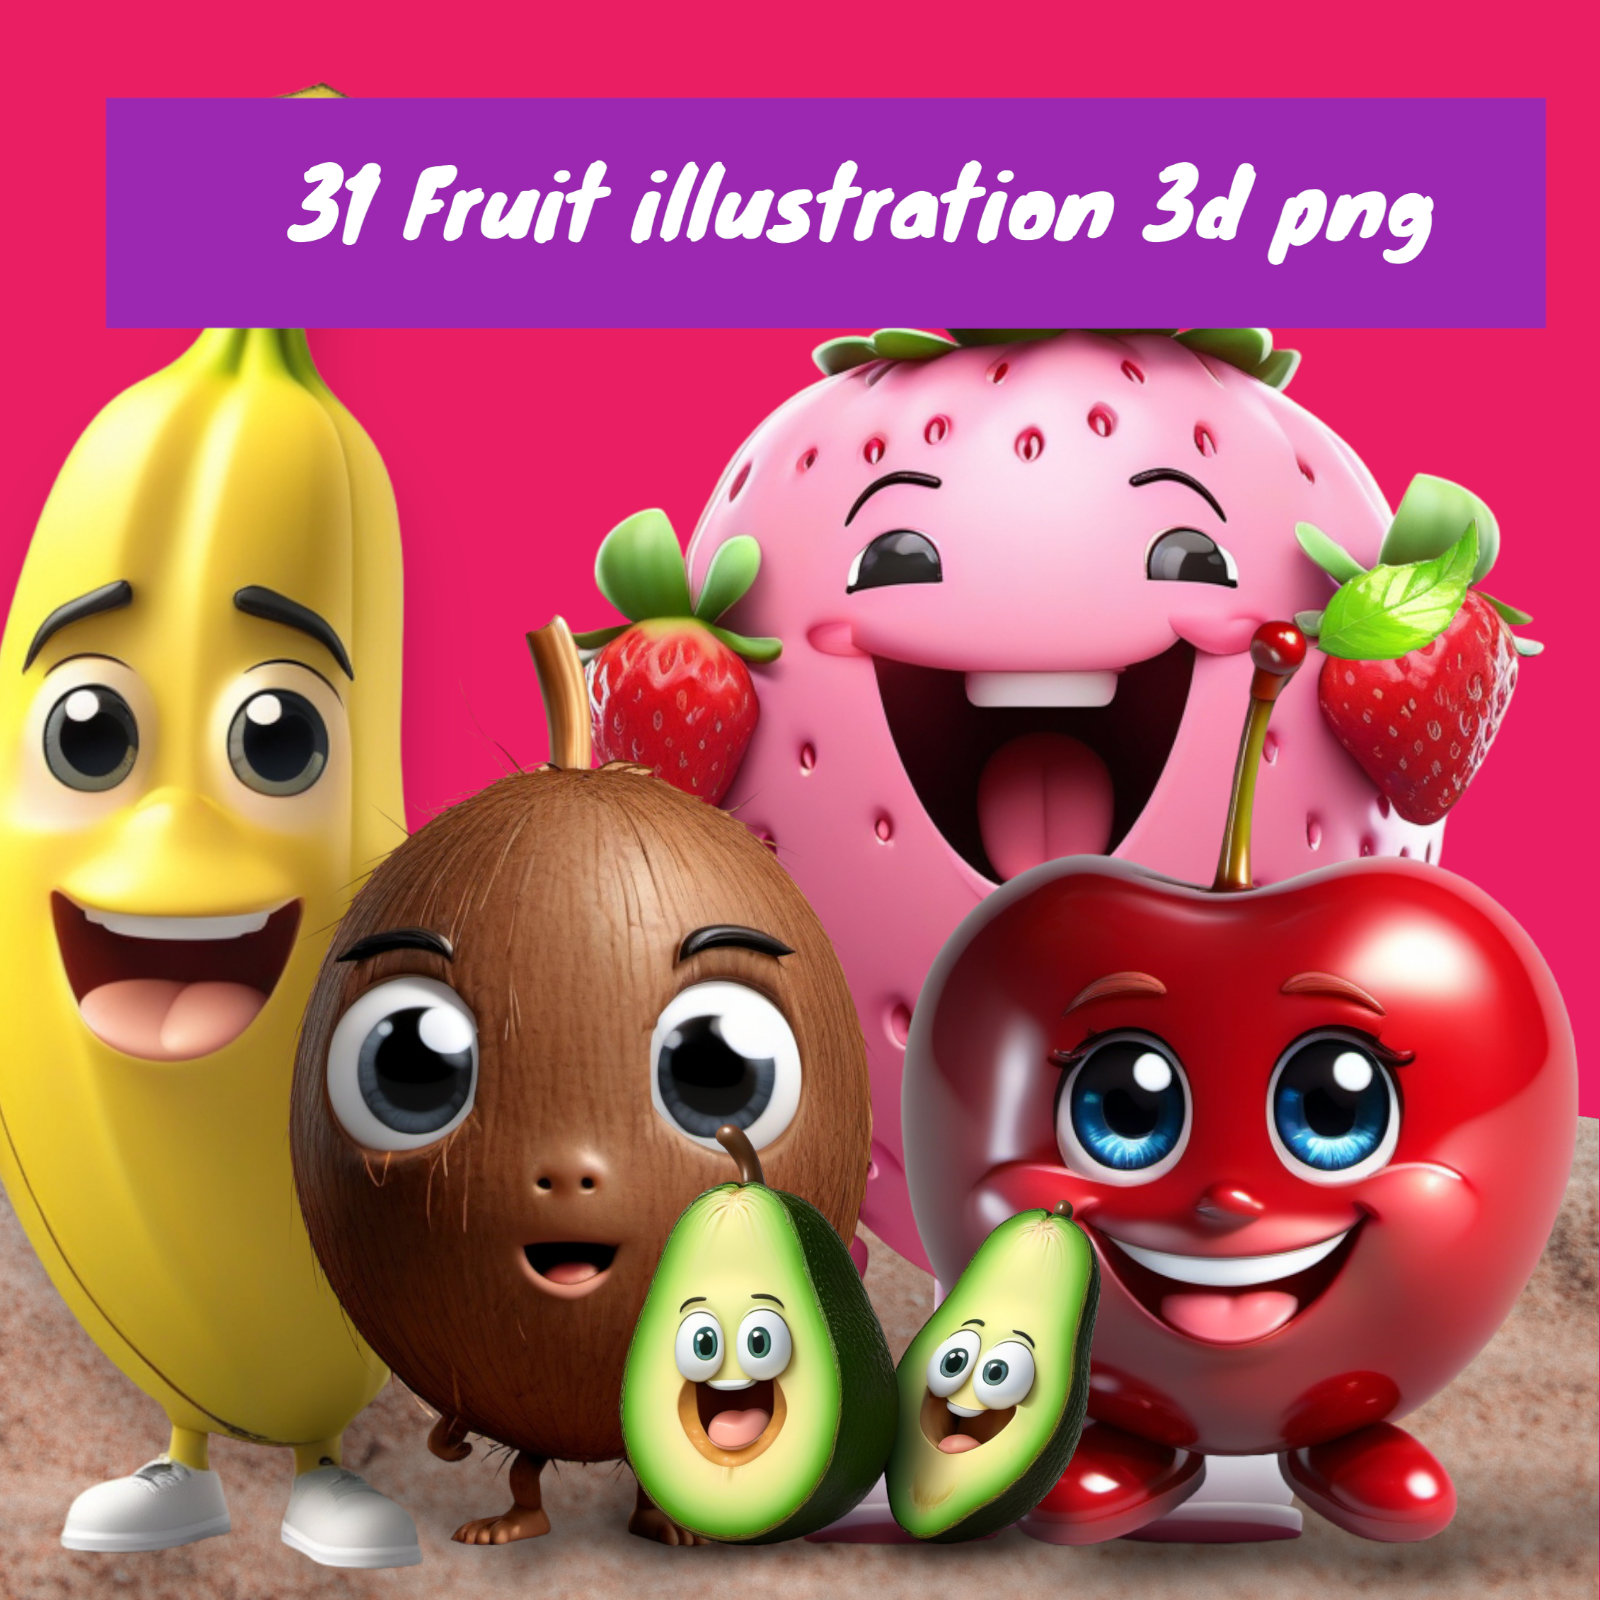 31 Fruit illustration 3d png cover image.